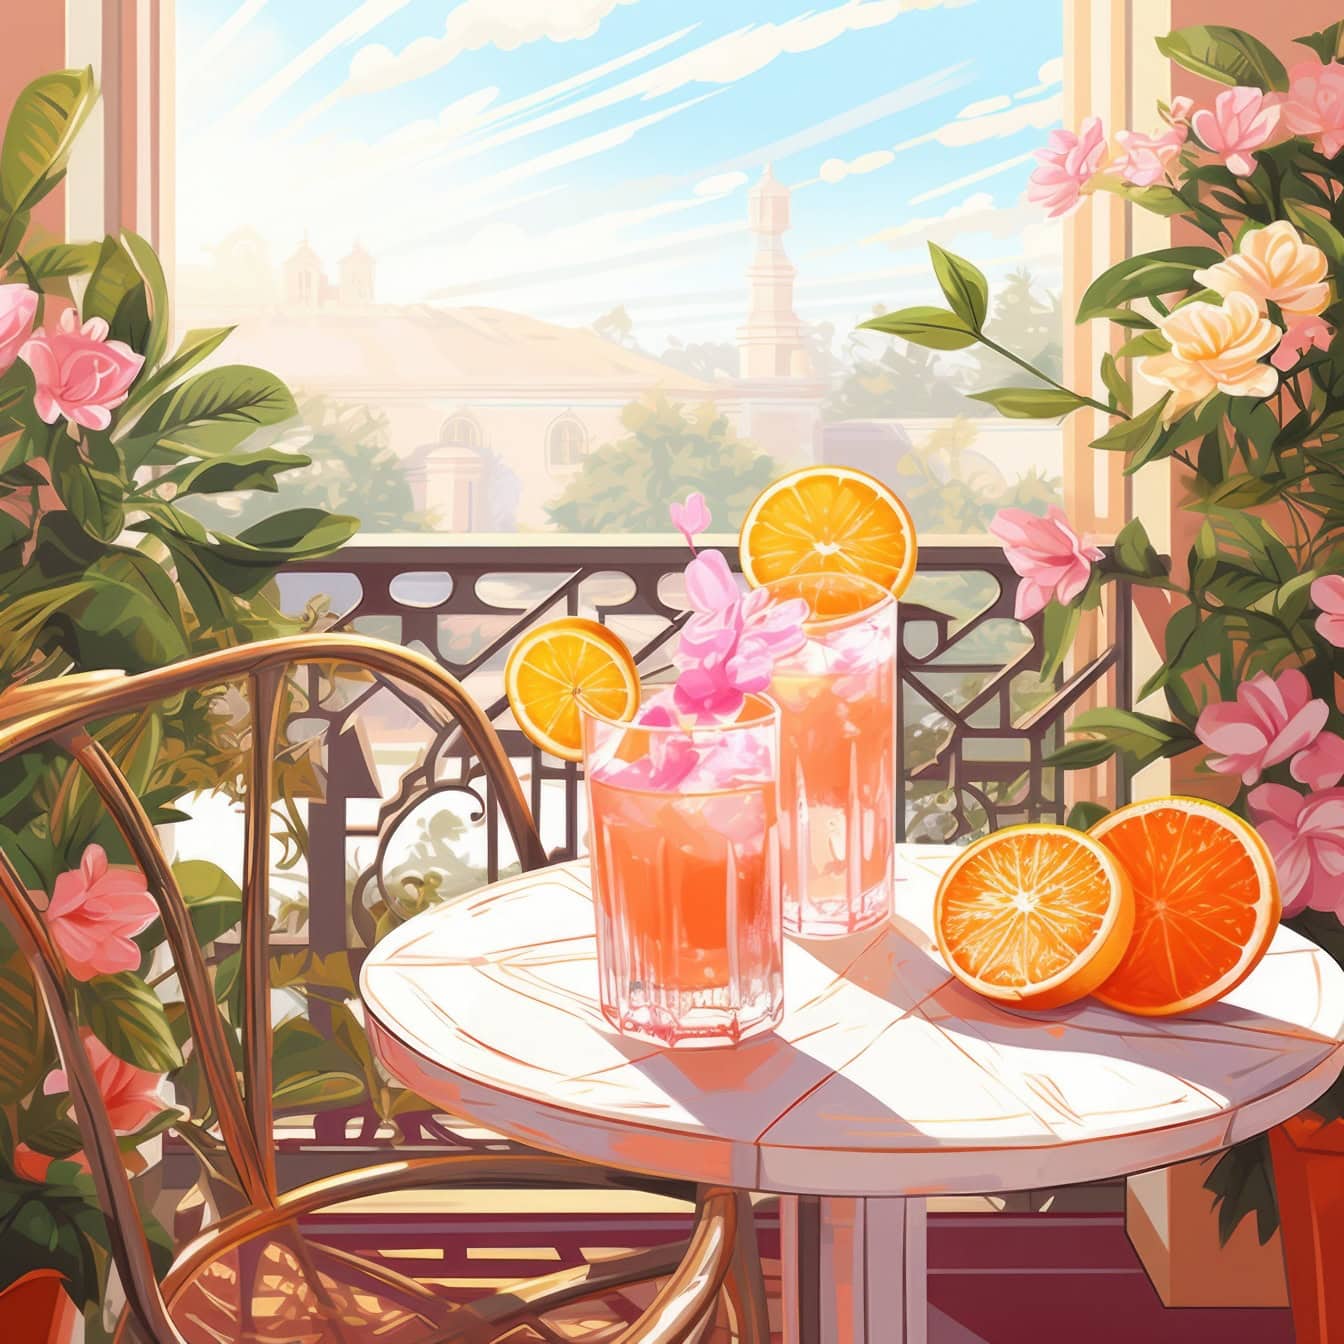 Grafisk illustrasjon av et bord med appelsinjuice, appelsiner og blomster på